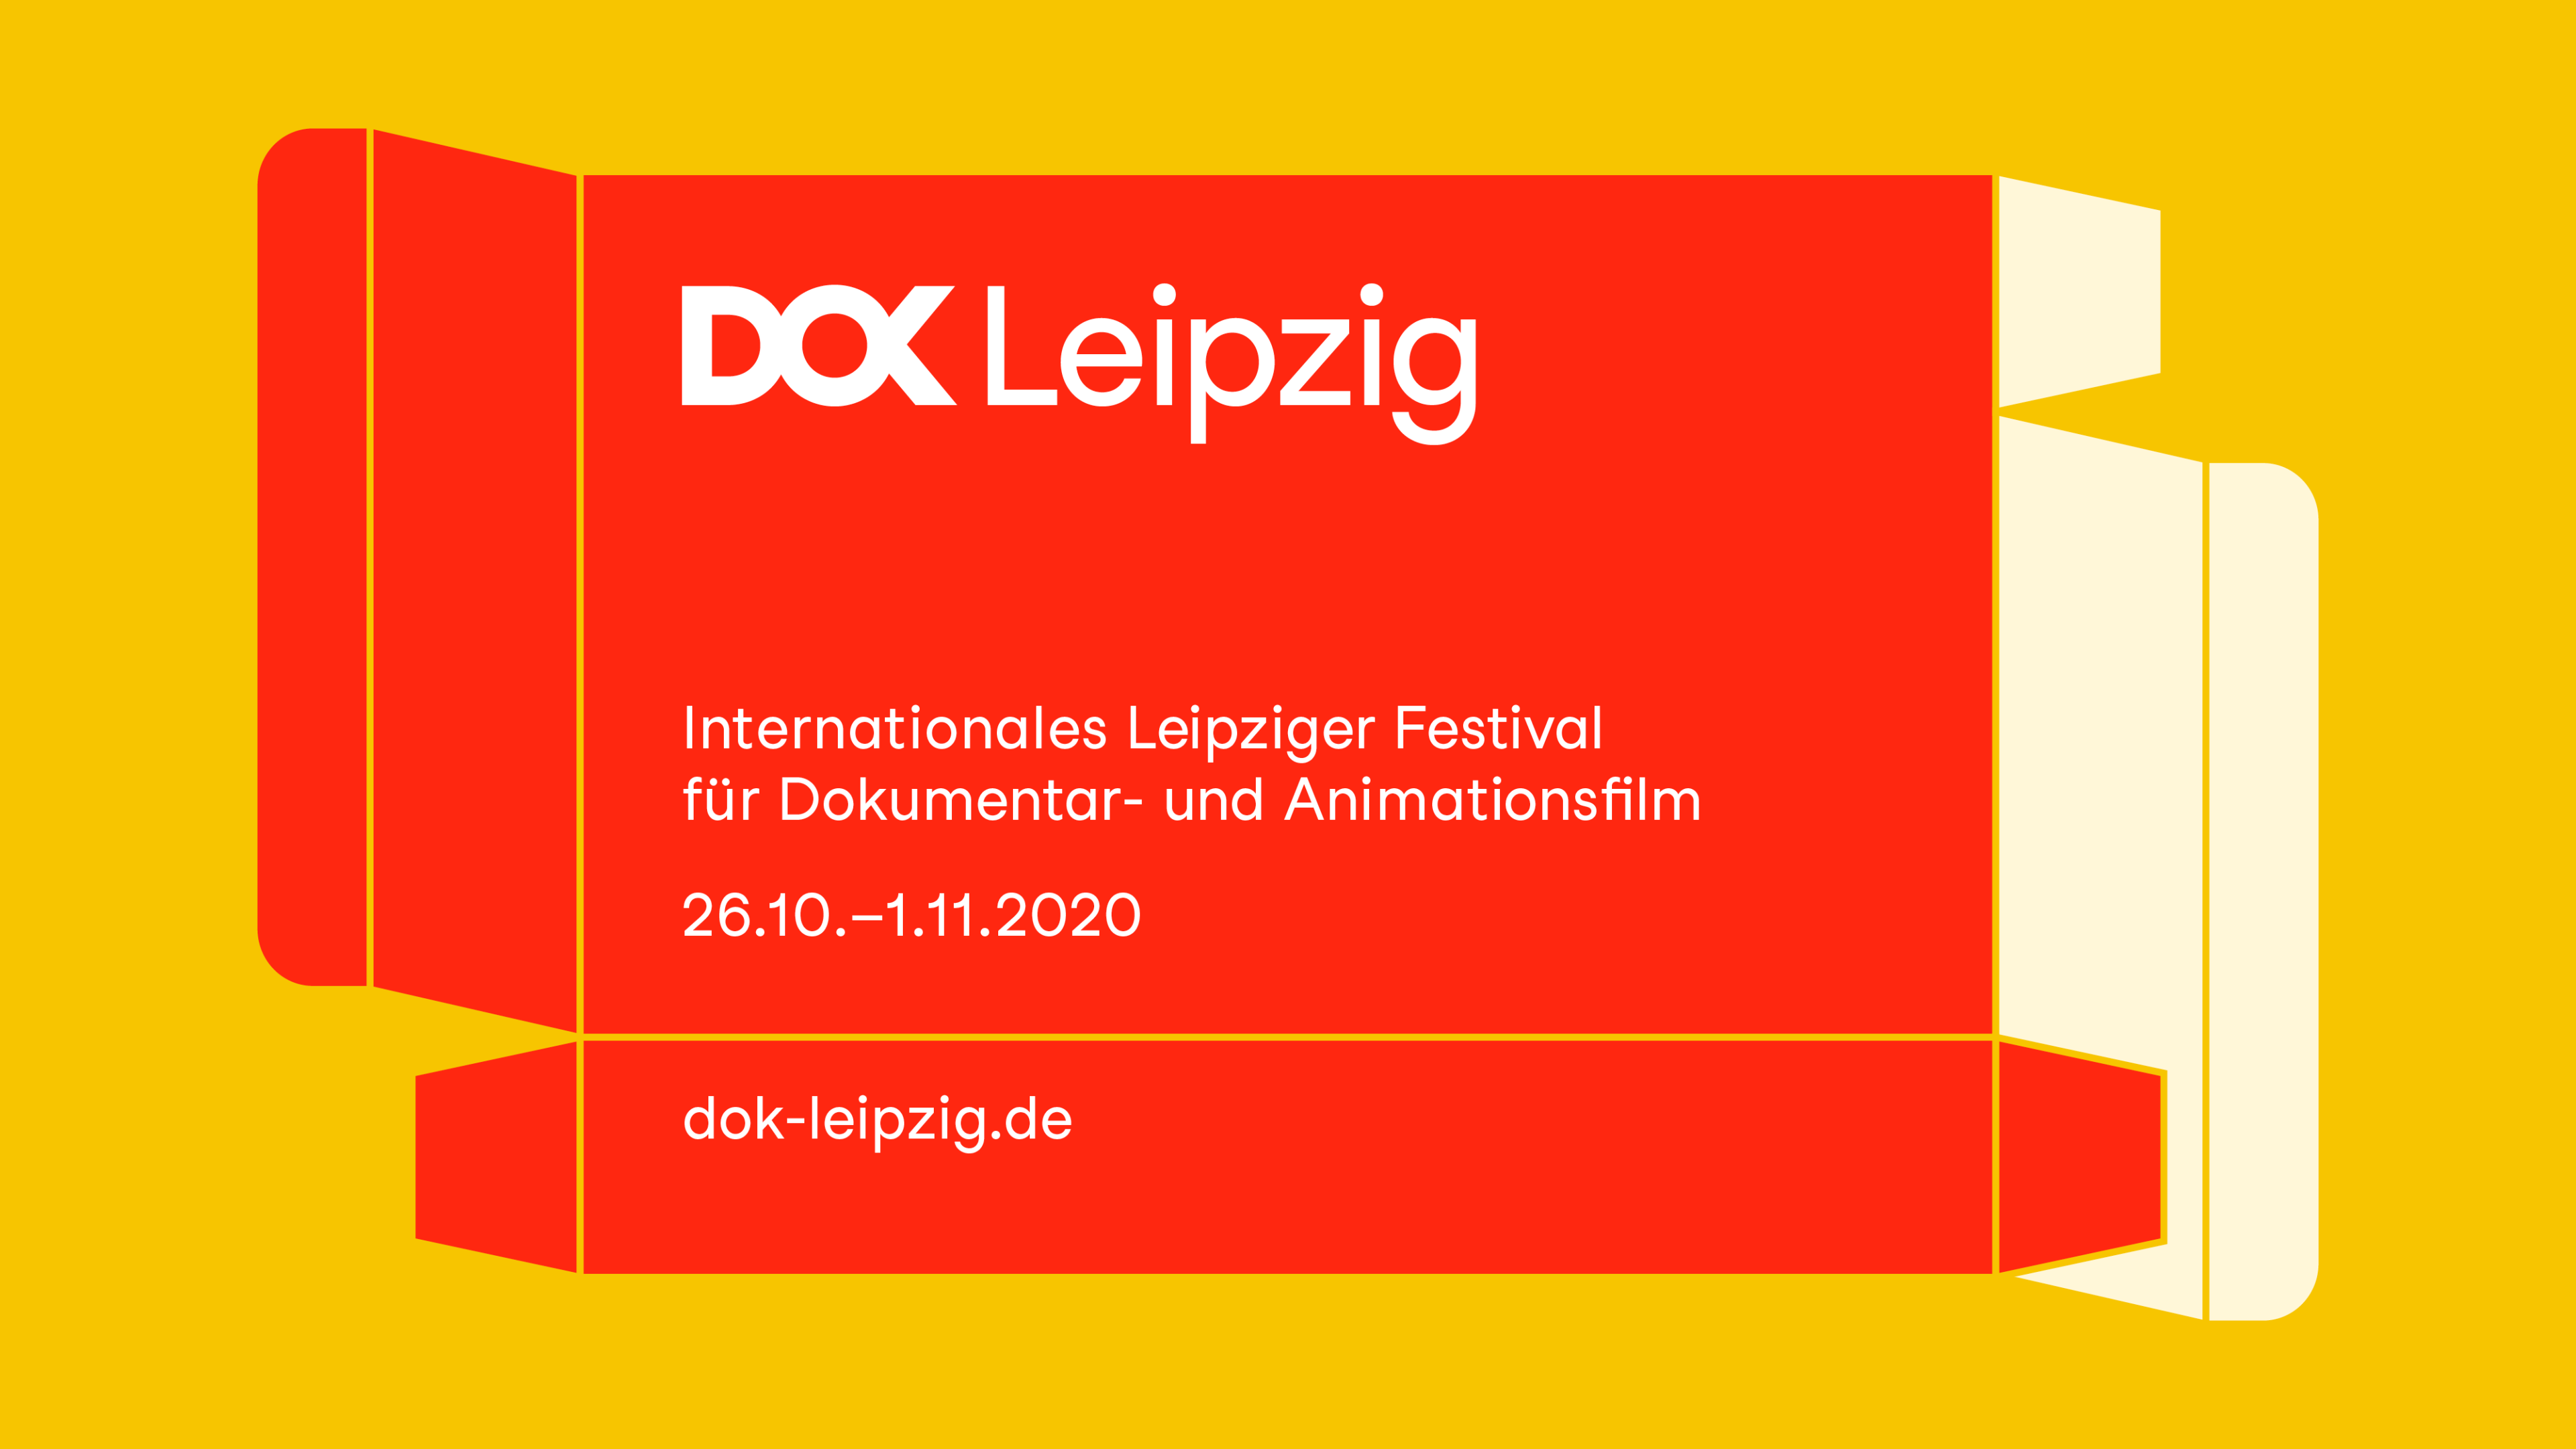 Festivalmotiv 2020: Grafik einer roten Faltschachtel mit DOK Leipzig Schriftzug und Festivaldatum